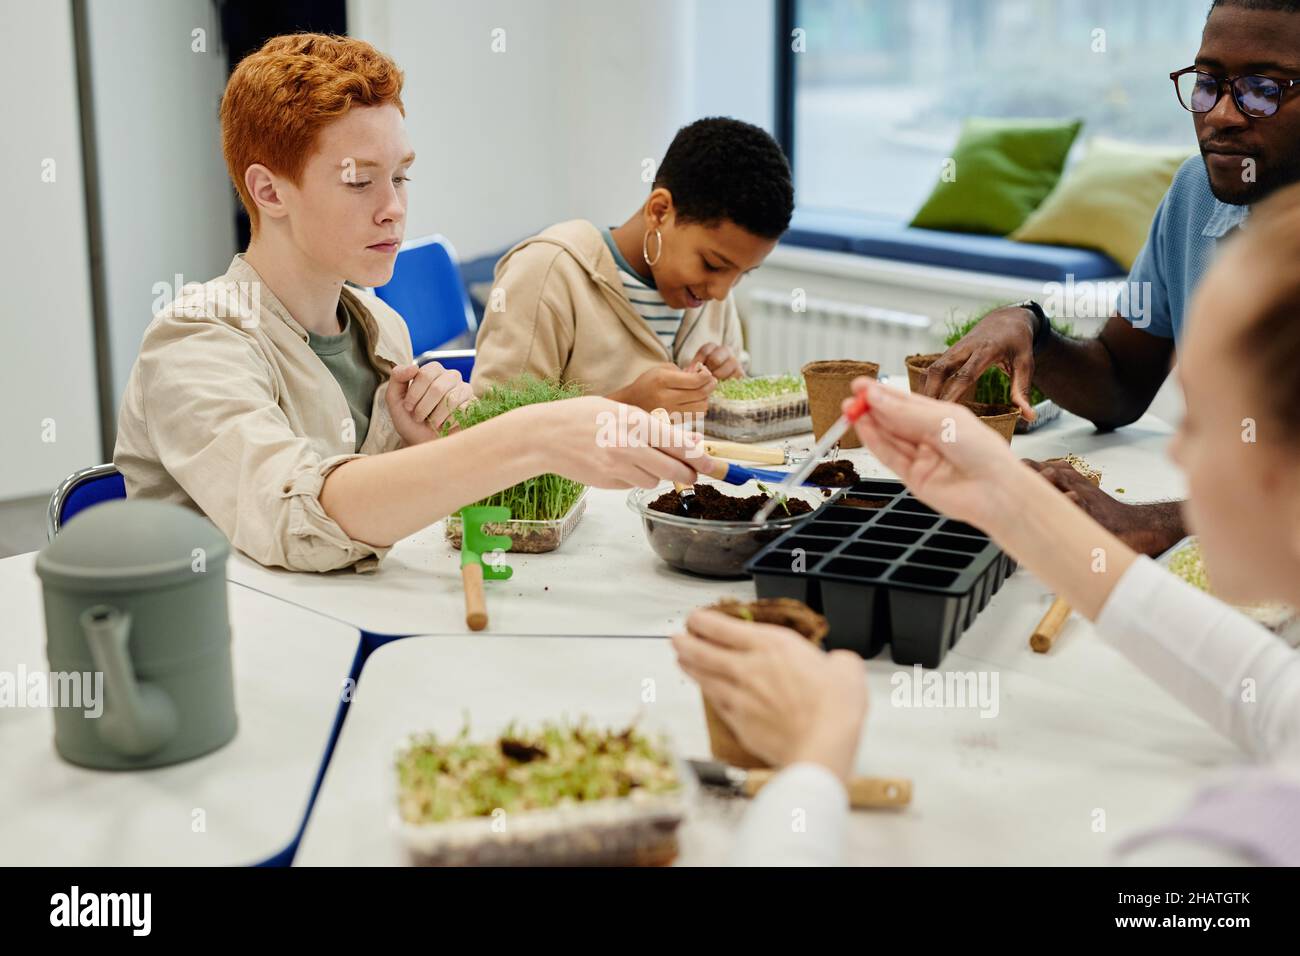 Verschiedene Gruppe von Kindern, die Samen Pflanzen, während sie während des Biologieunterschurs in der Schule experimentieren Stockfoto